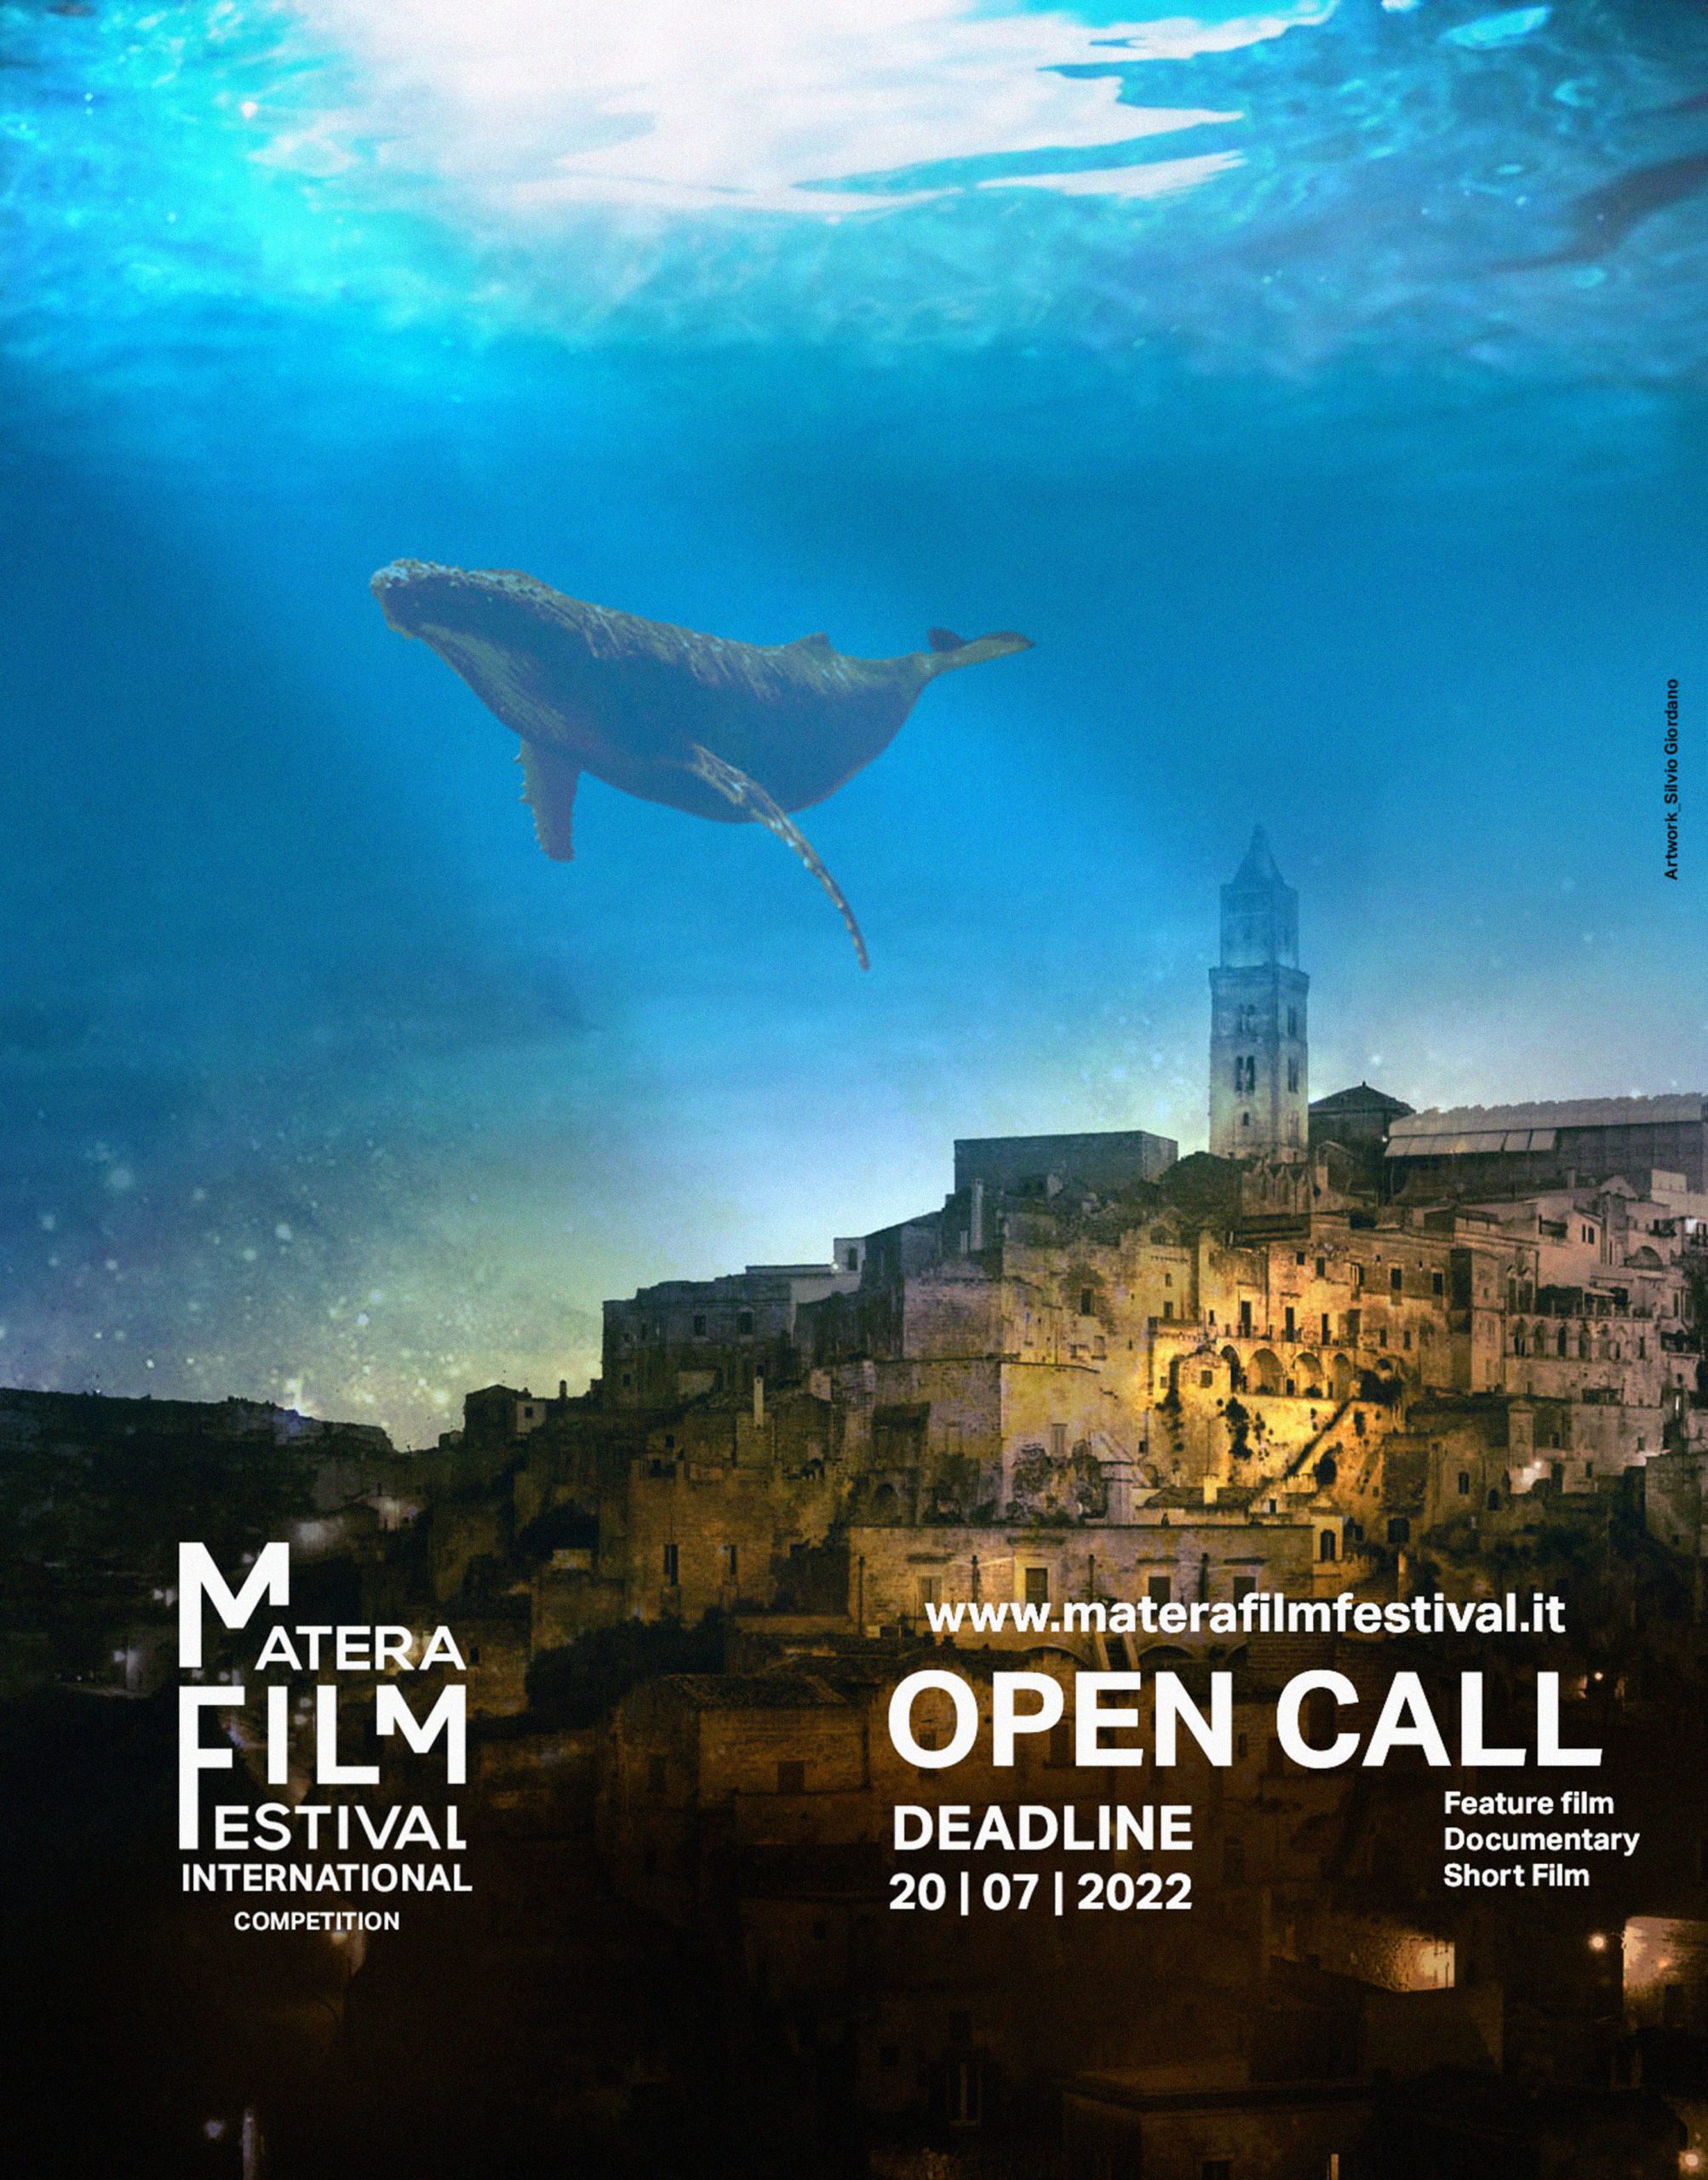 Matera Film Festival, aperte le iscrizioni al concorso 1-8 ottobre Terza Edizione